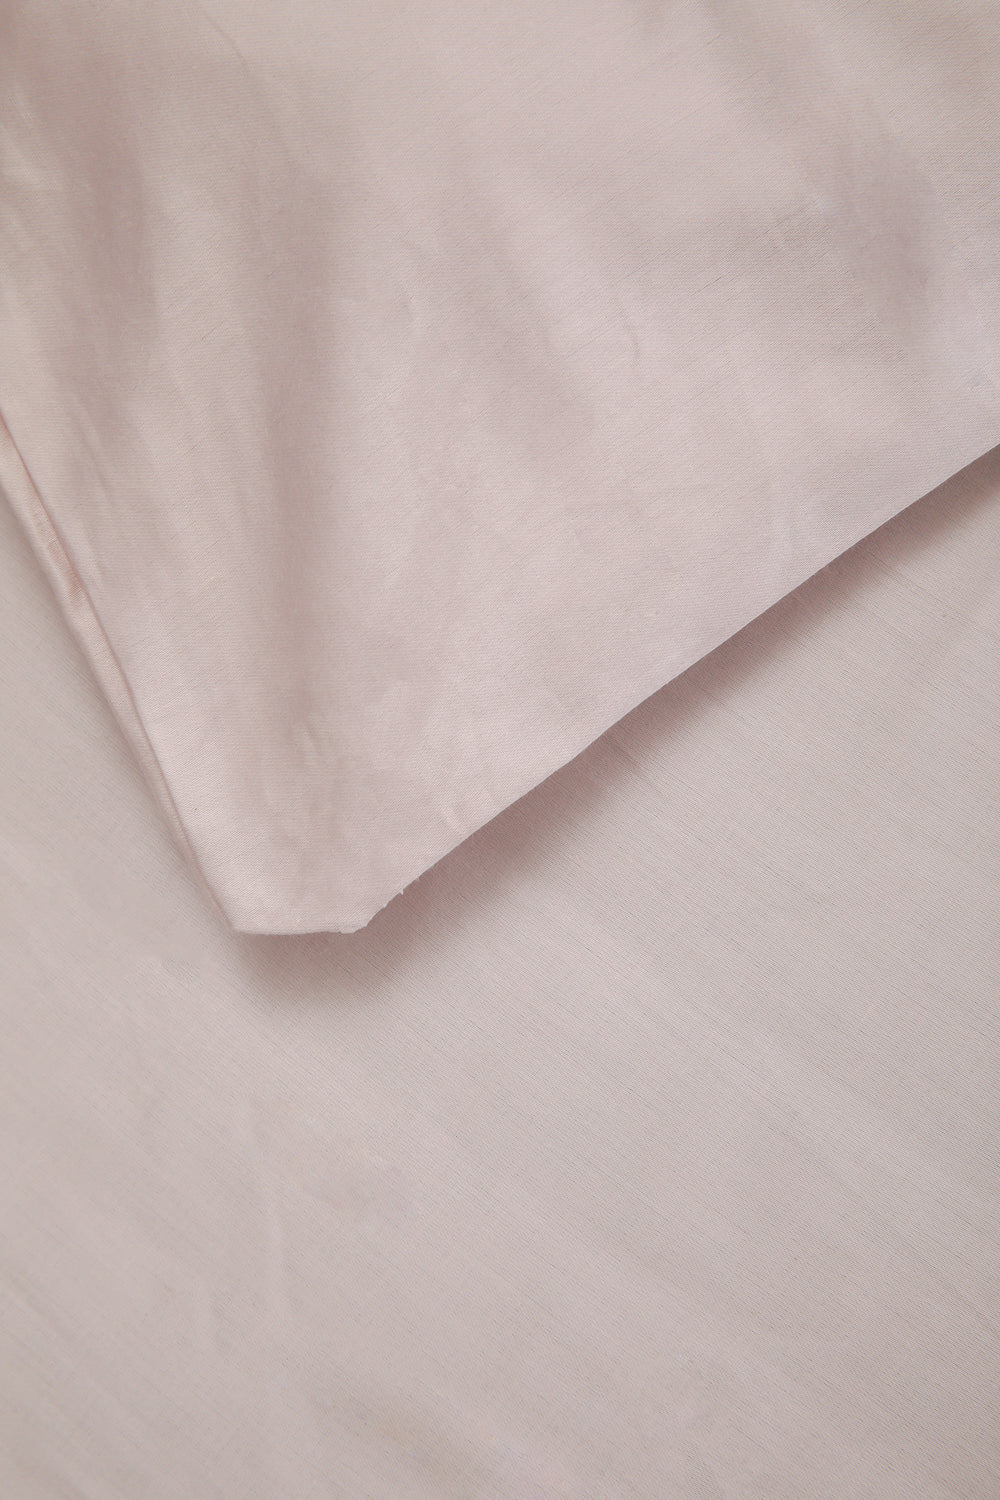 סדין מיטה זוגית רחבה מאוד  200/200 100% כותנה באריגת סאטן בצבע לילך